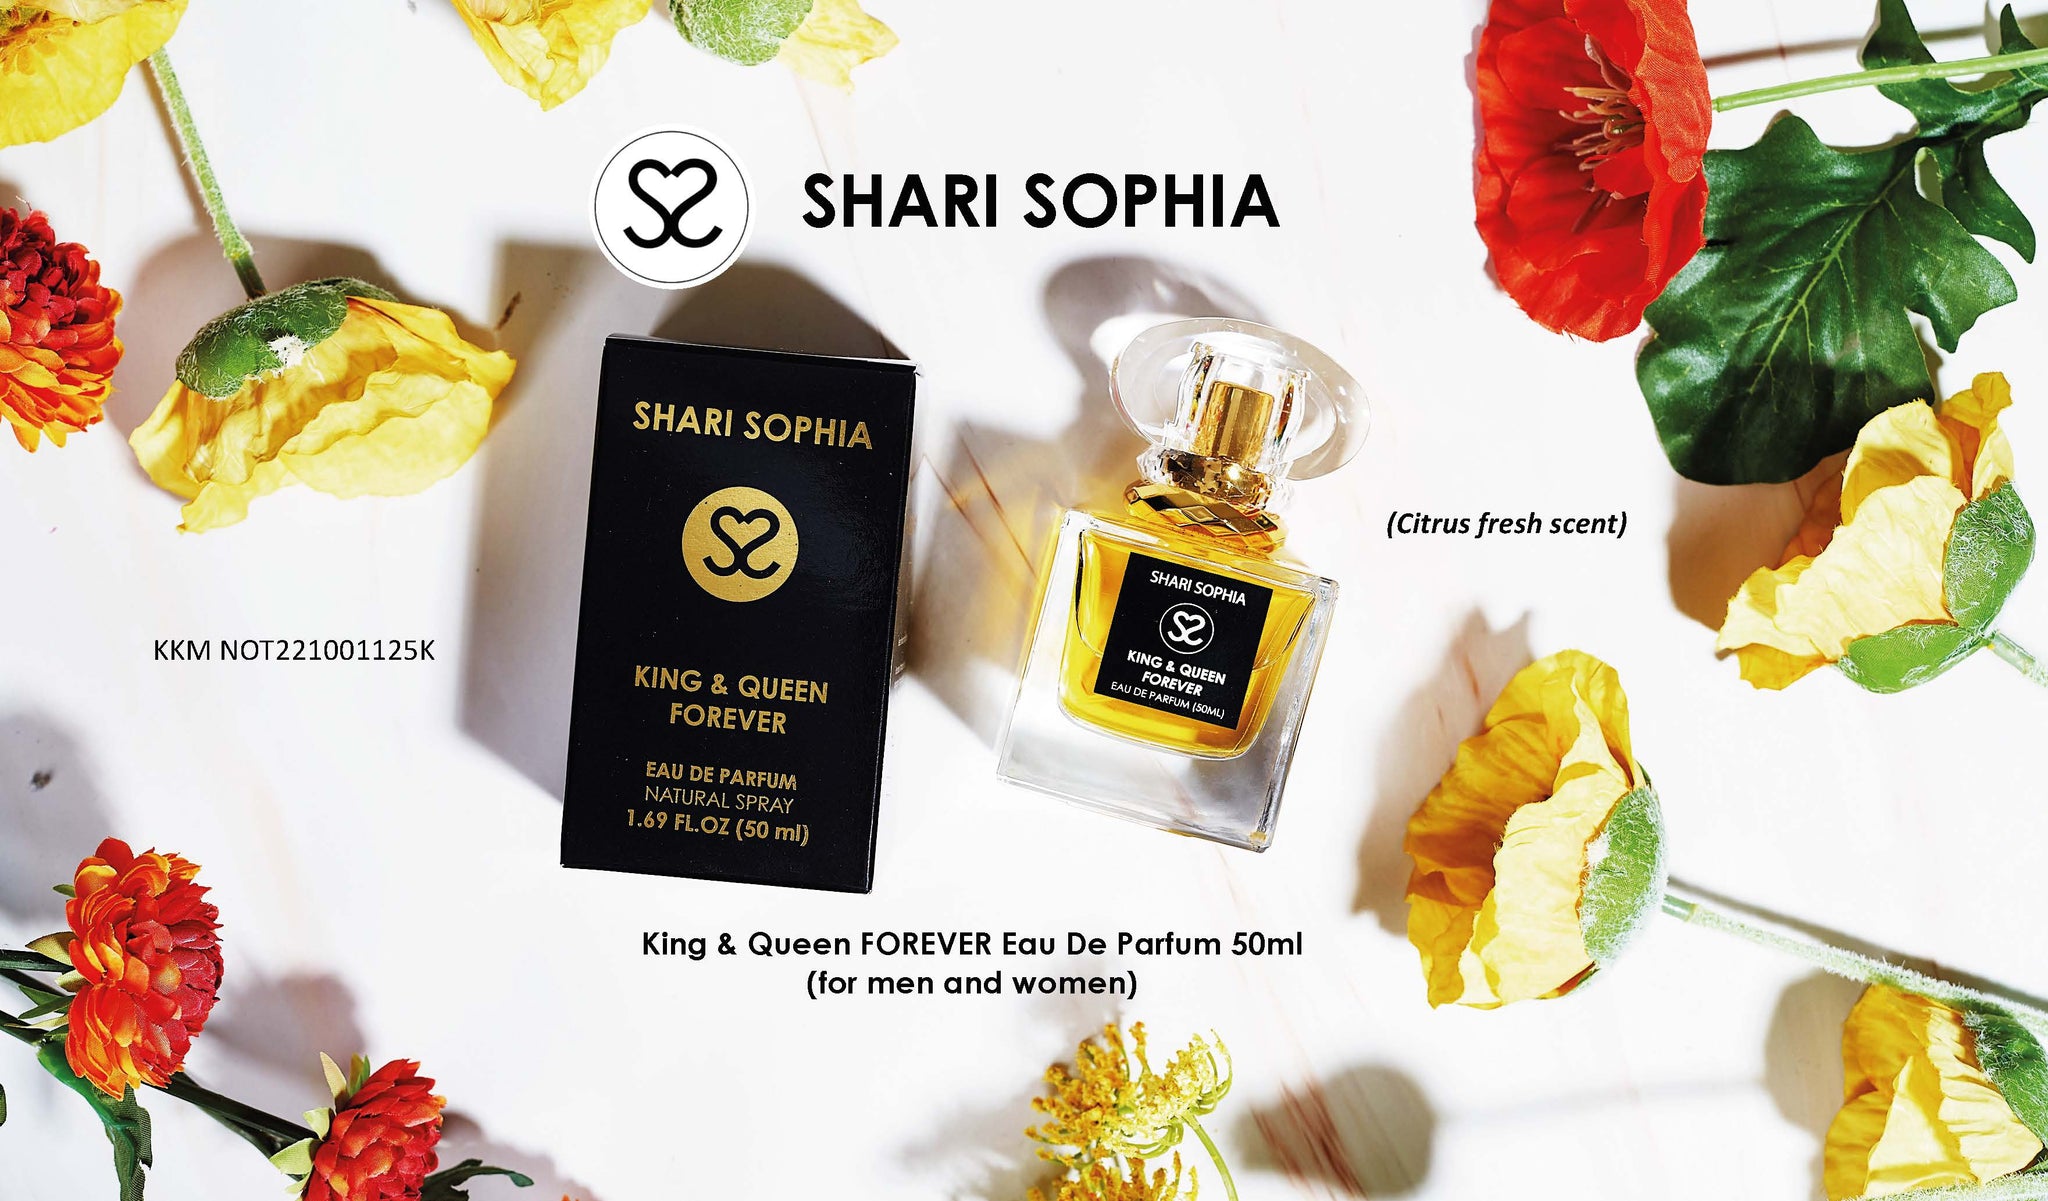 SHARI SOPHIA KING & QUEEN FOREVER PERFUME FOR MEN AND WOMEN EDP 50ML